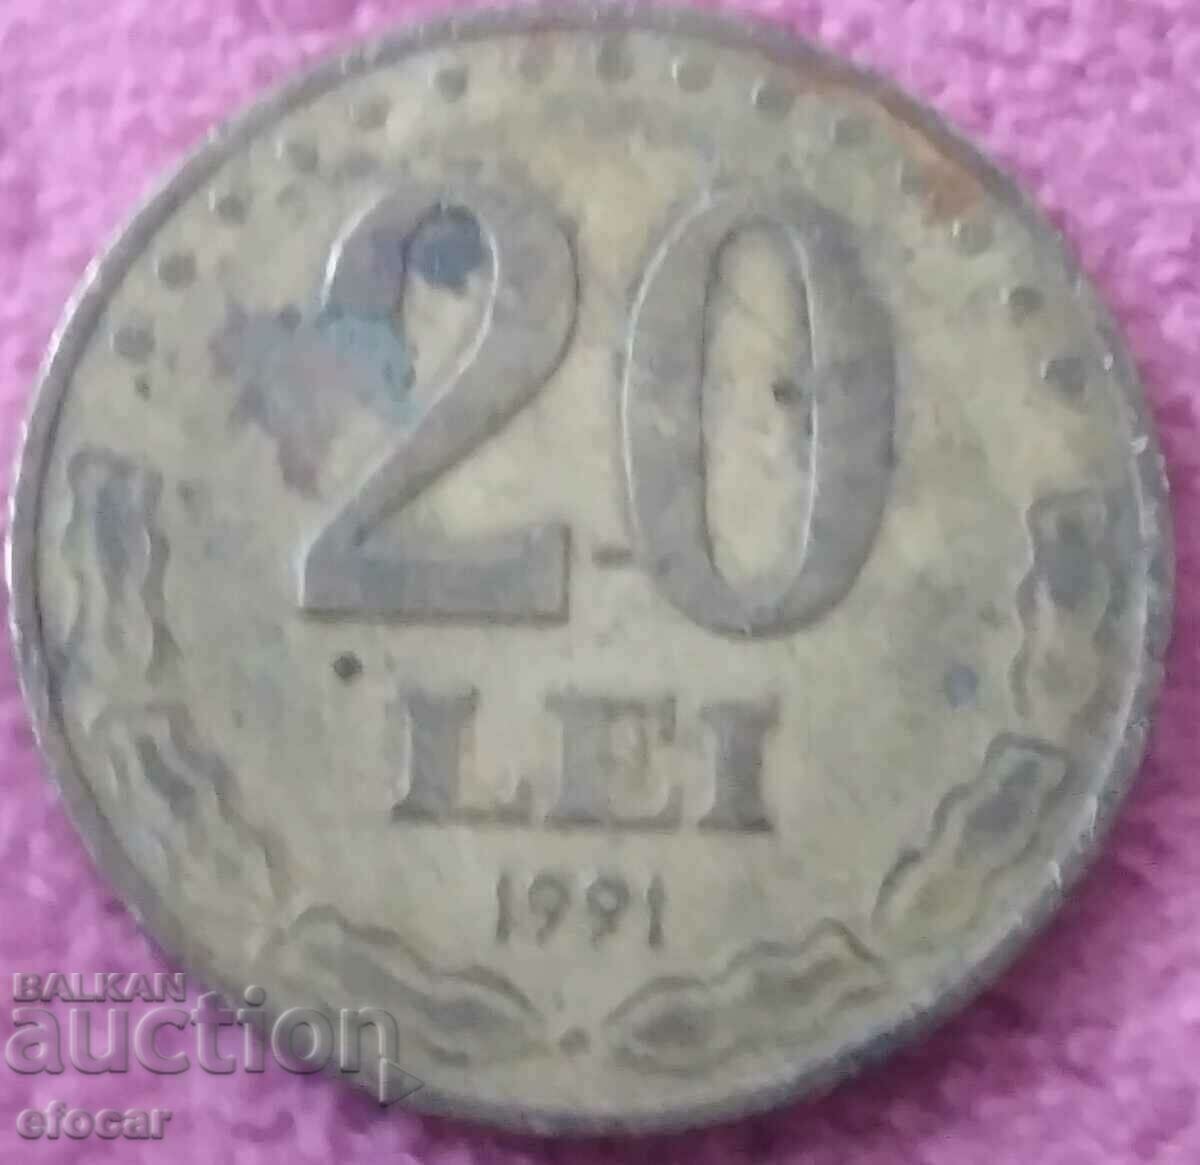 20 лей Румъния 1991 старт от 0,01